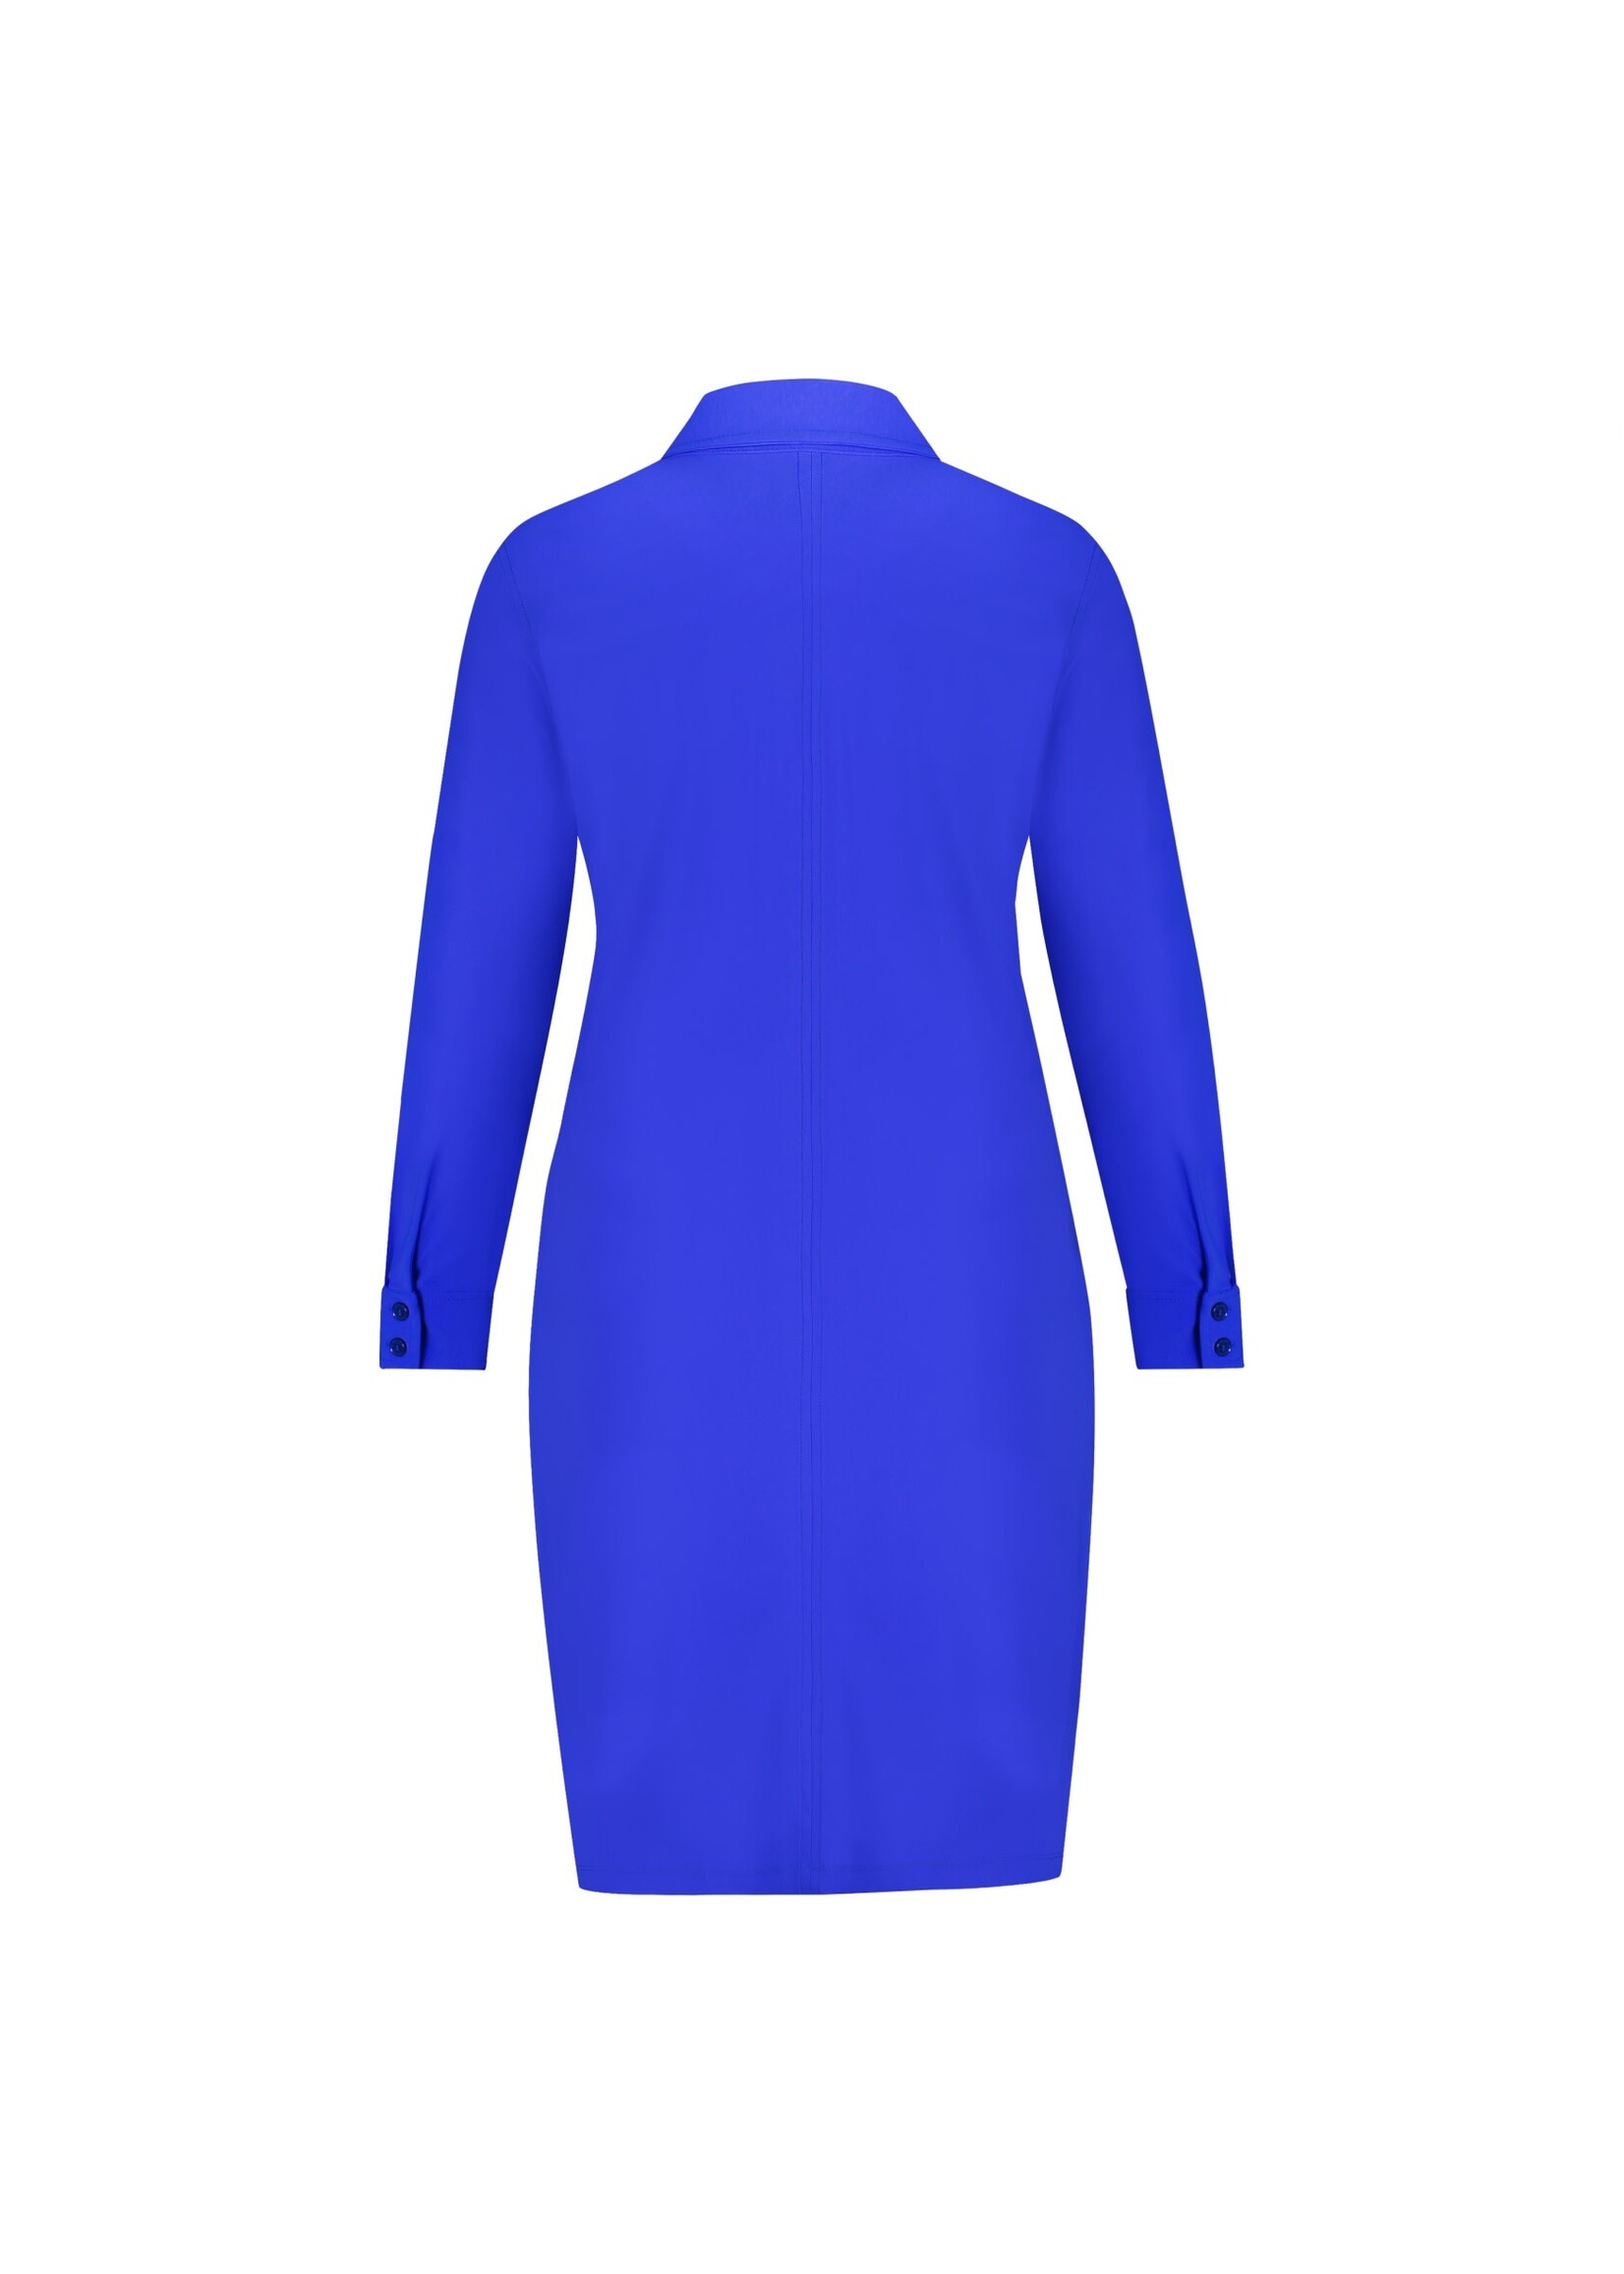 PlusBasics Blouse Dress royal blue